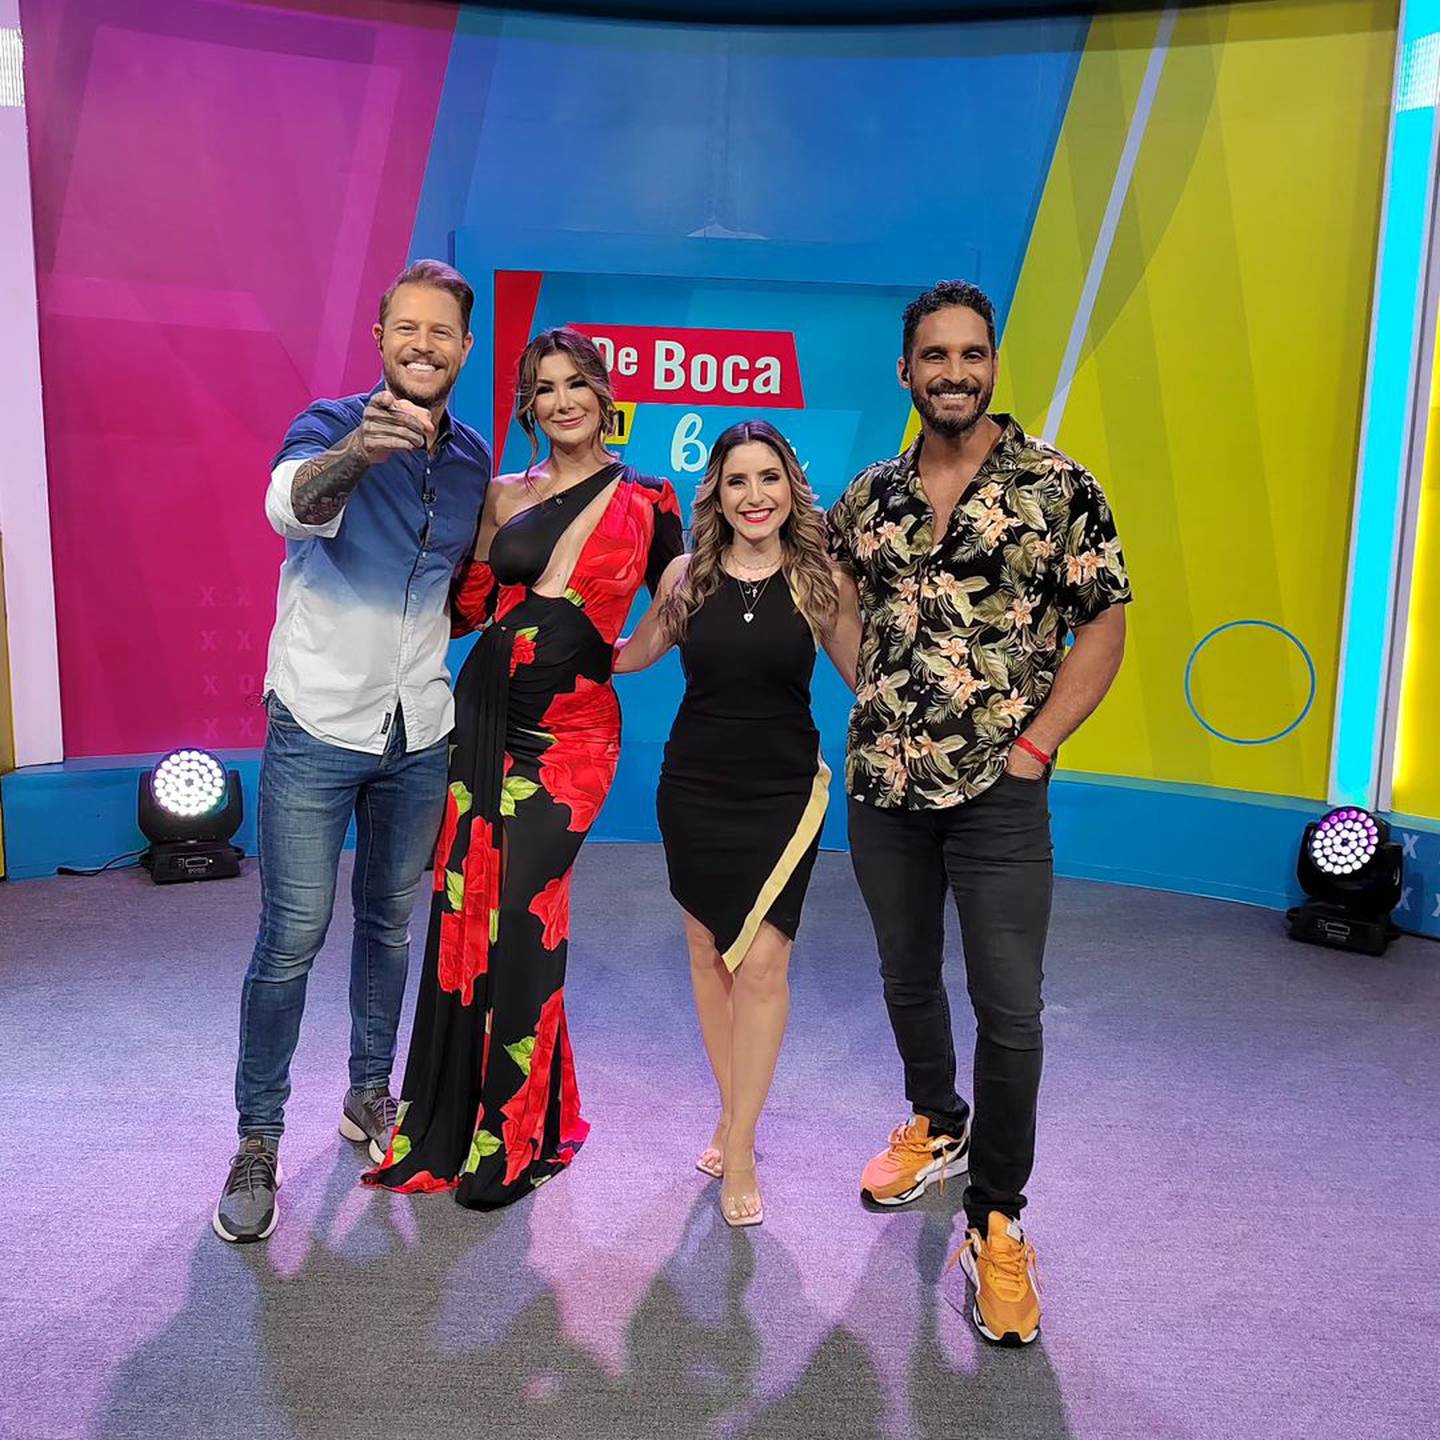 Mauricio Hoffmann, Montserrat del Castillo, Natalia Monge y Bismarck Méndez son los presentadores estelares de De boca en boca.